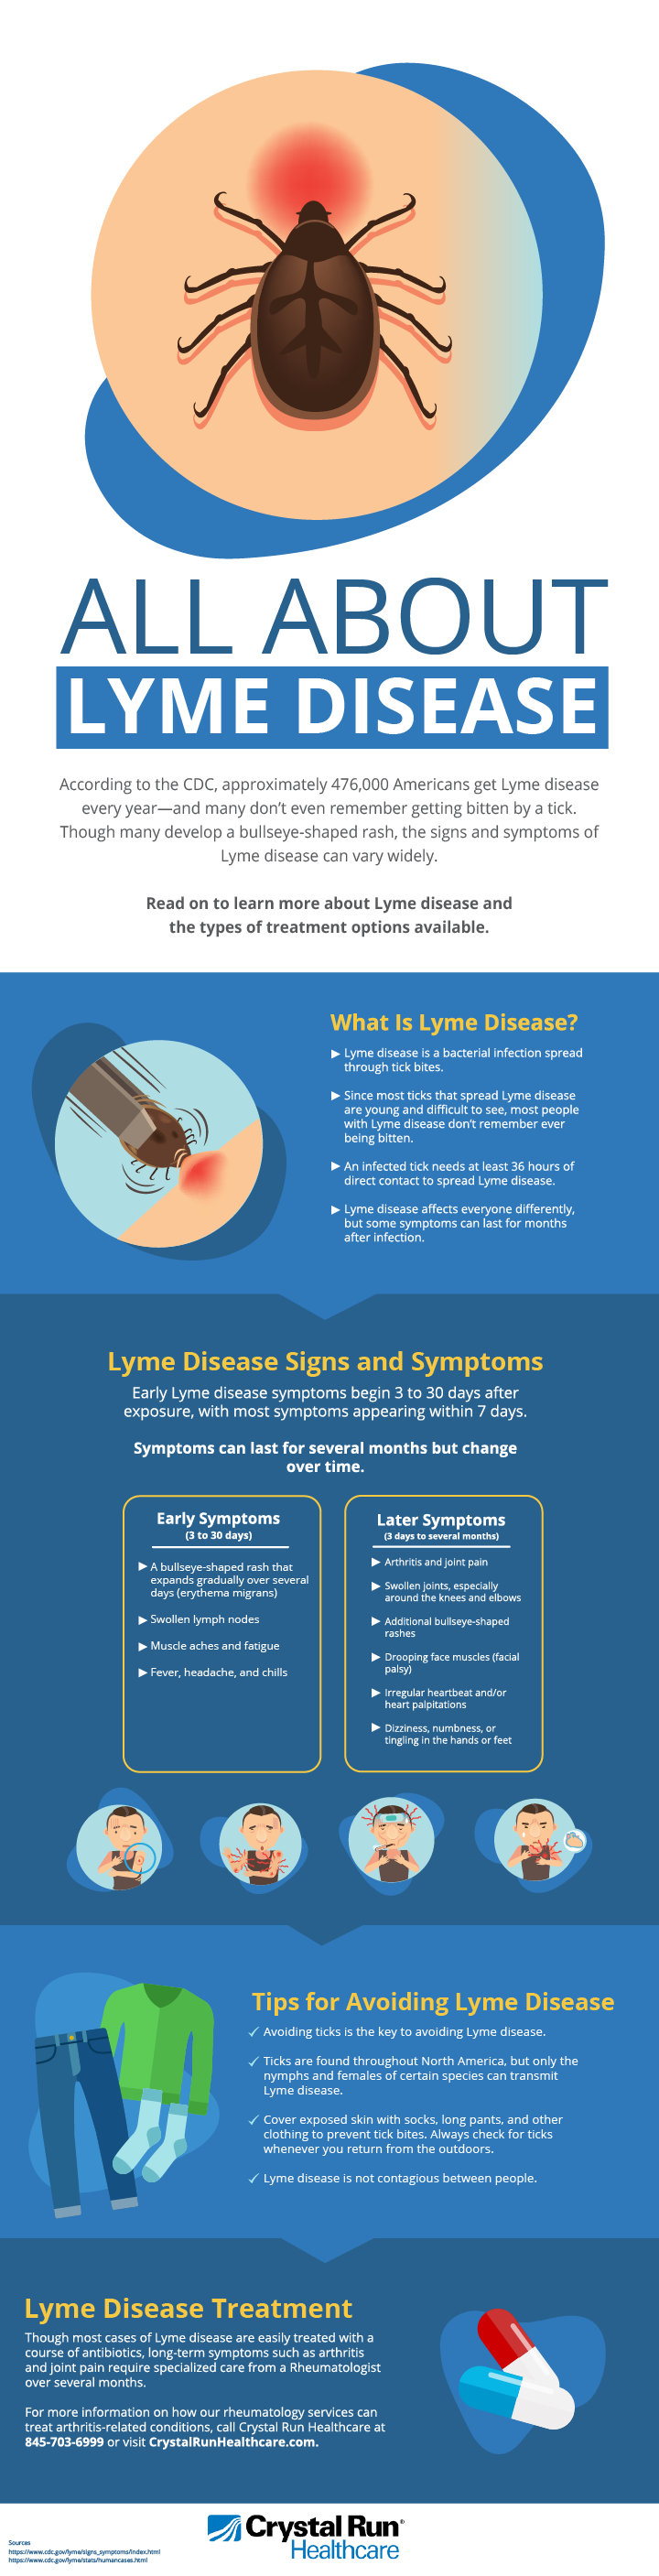 What Is Lyme Disease? Lyme Disease Symptoms & Treatment